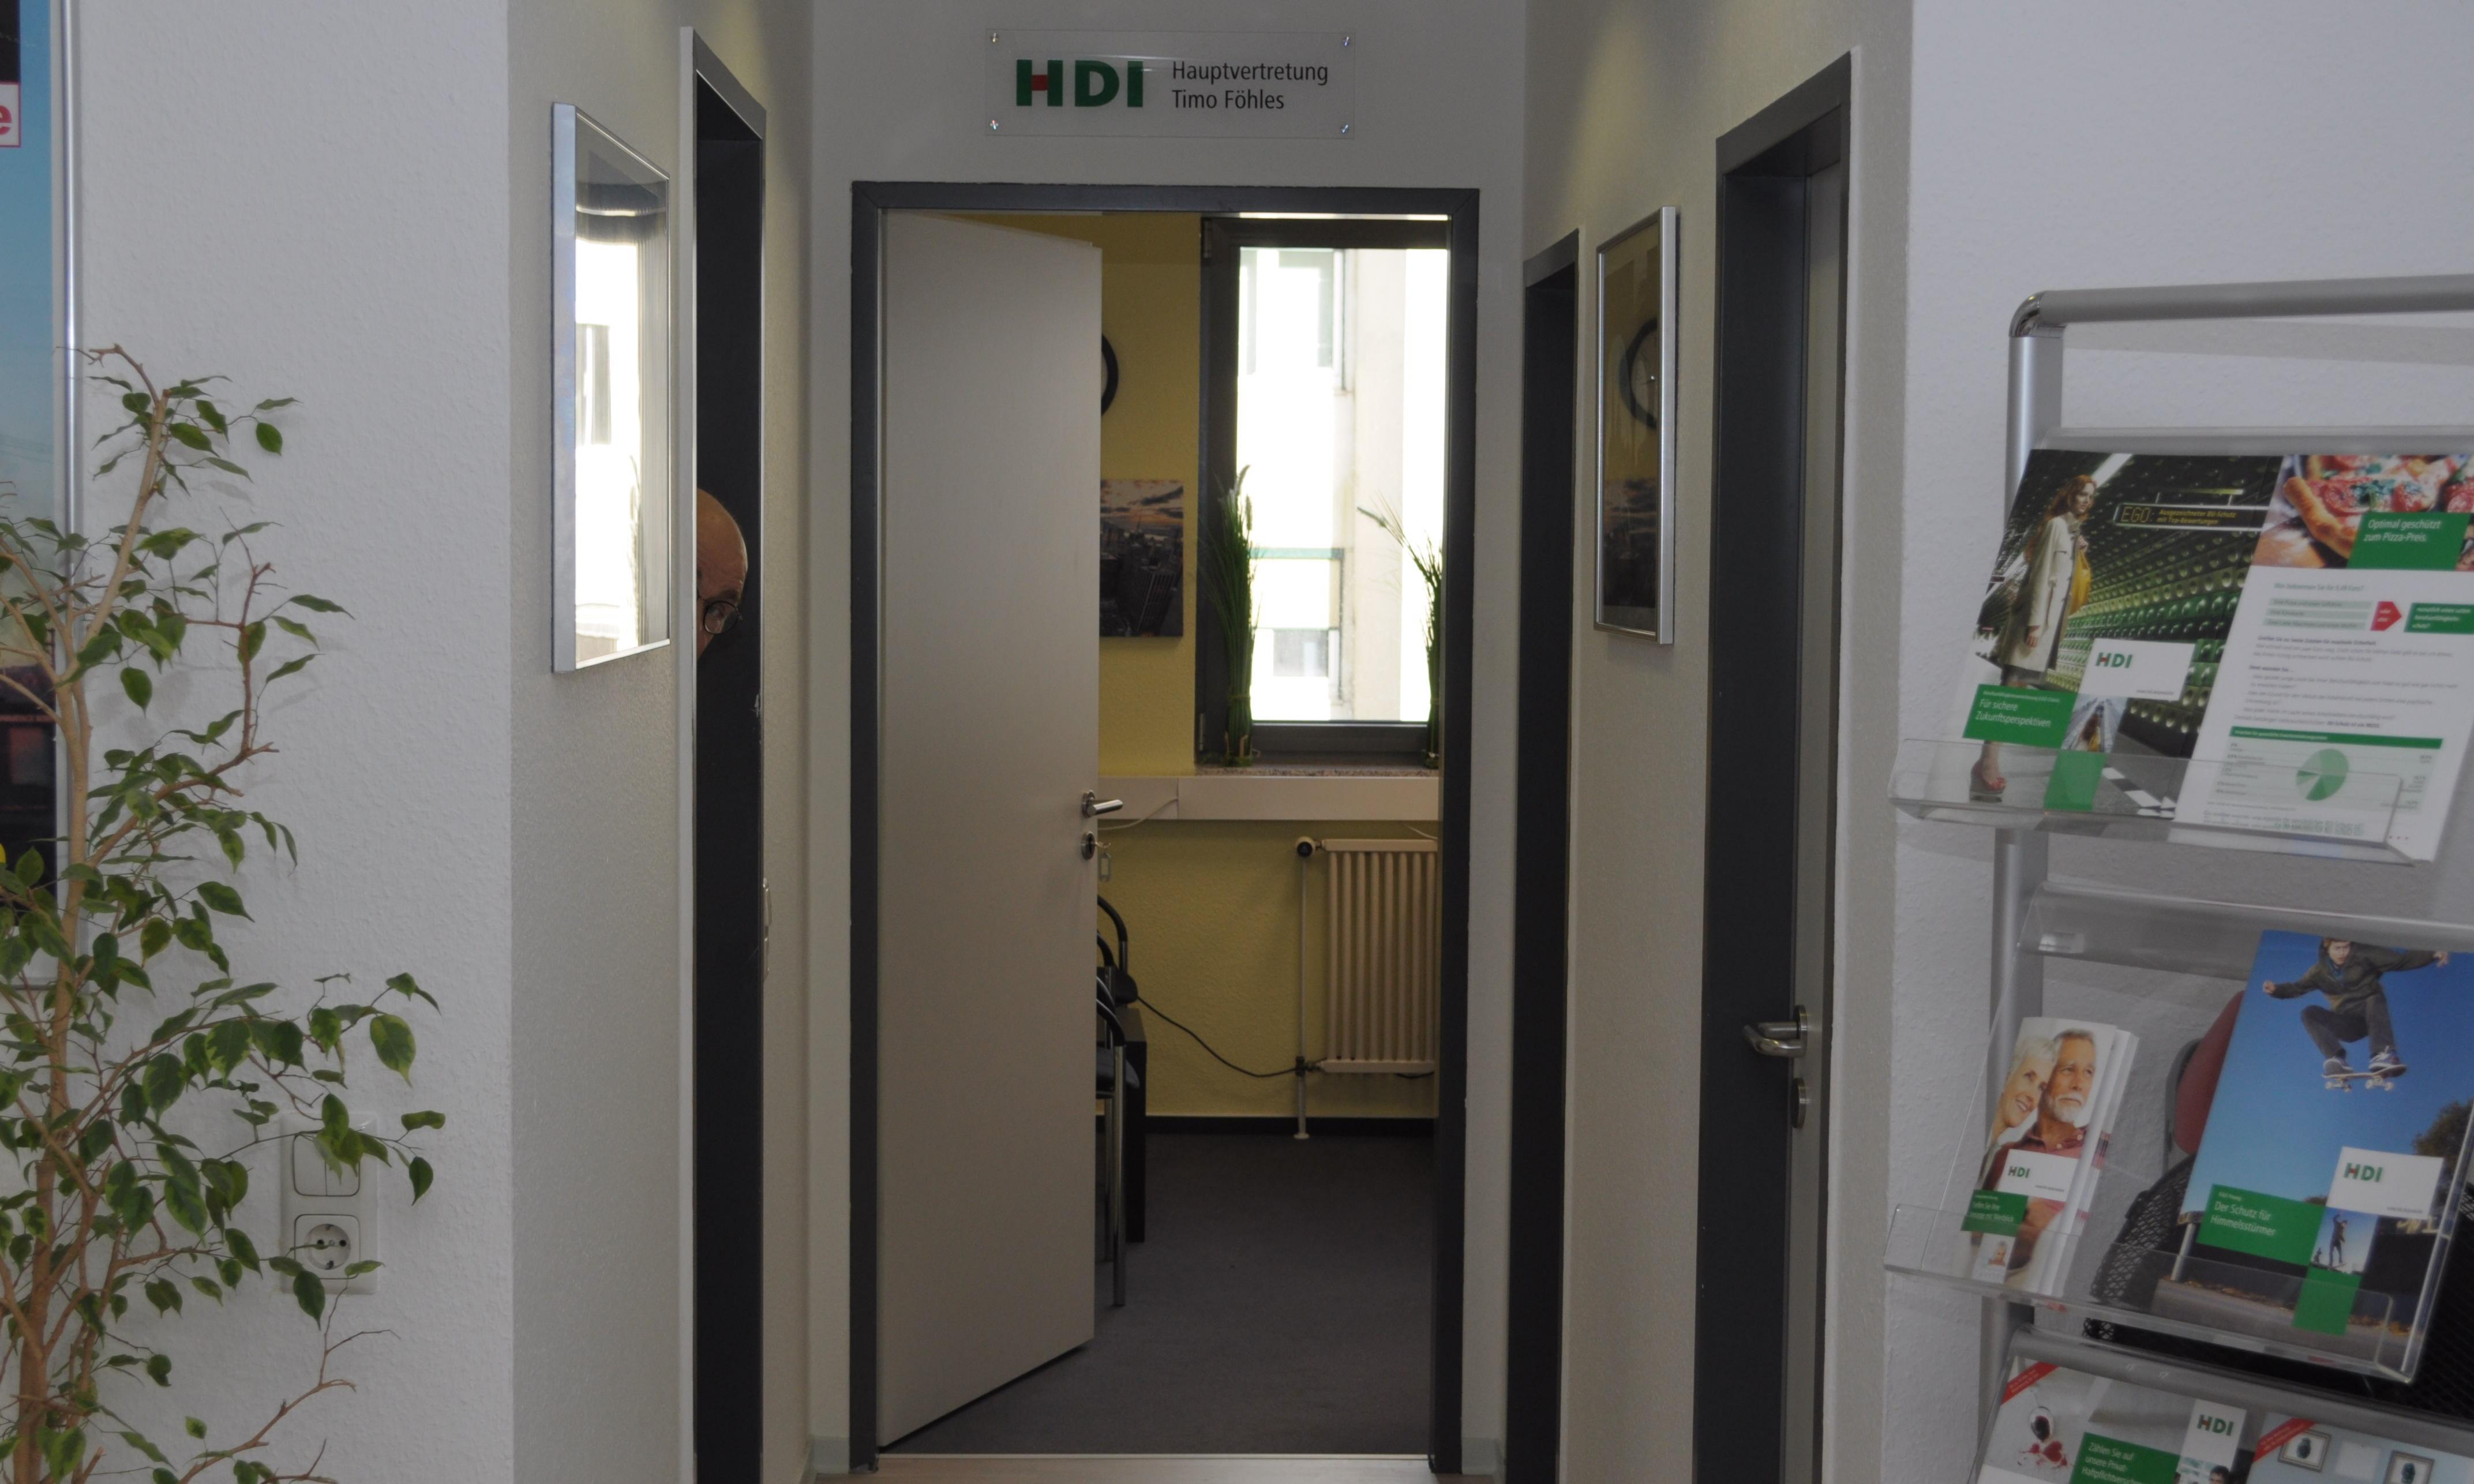 HDI Versicherungen: Timo Föhles, Schildergasse 112 in Köln